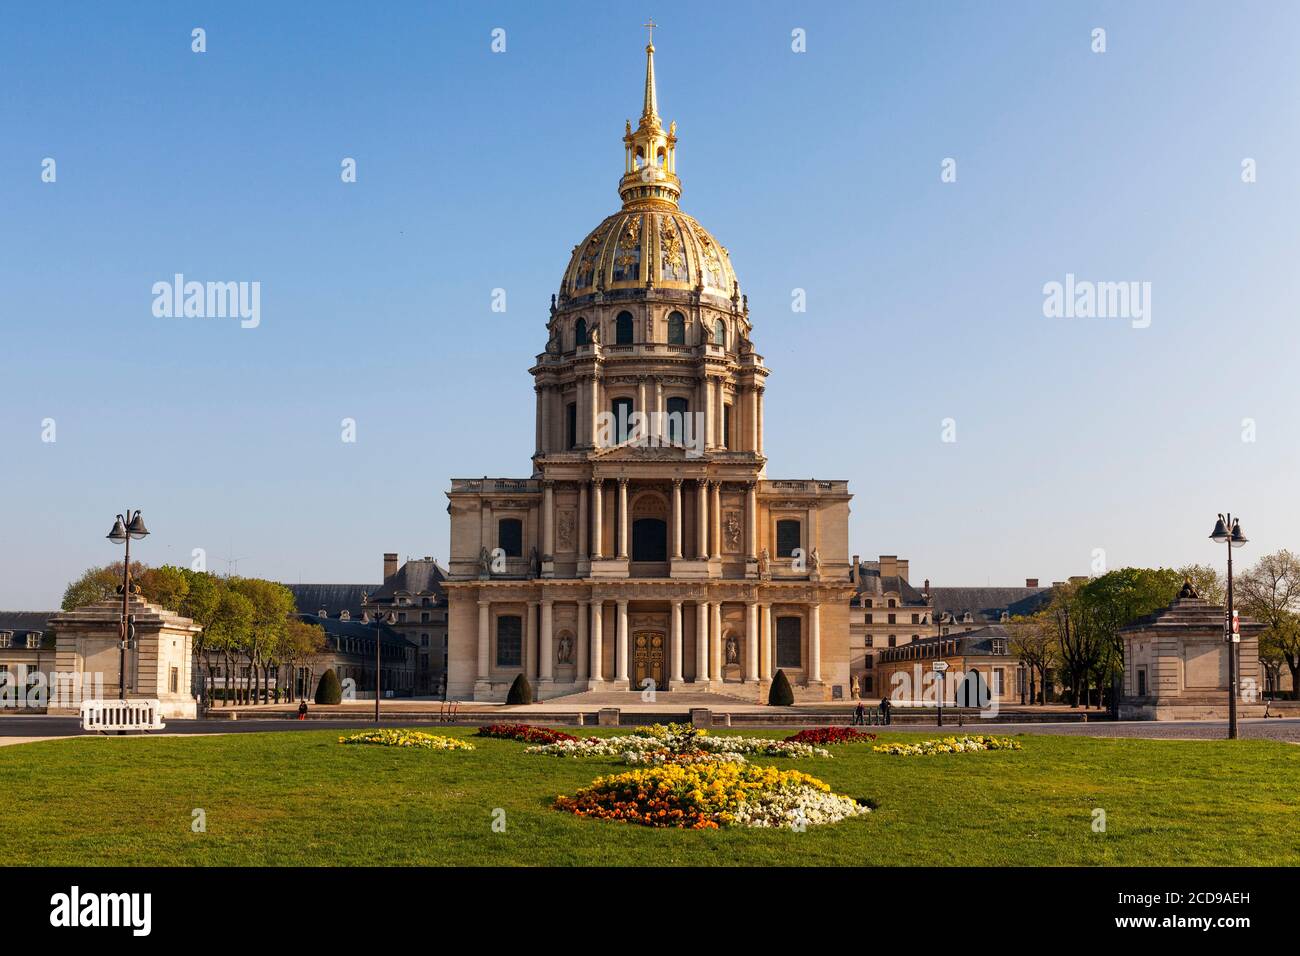 France, Paris, région classée au patrimoine mondial de l'UNESCO, H?tel des Invalides Banque D'Images